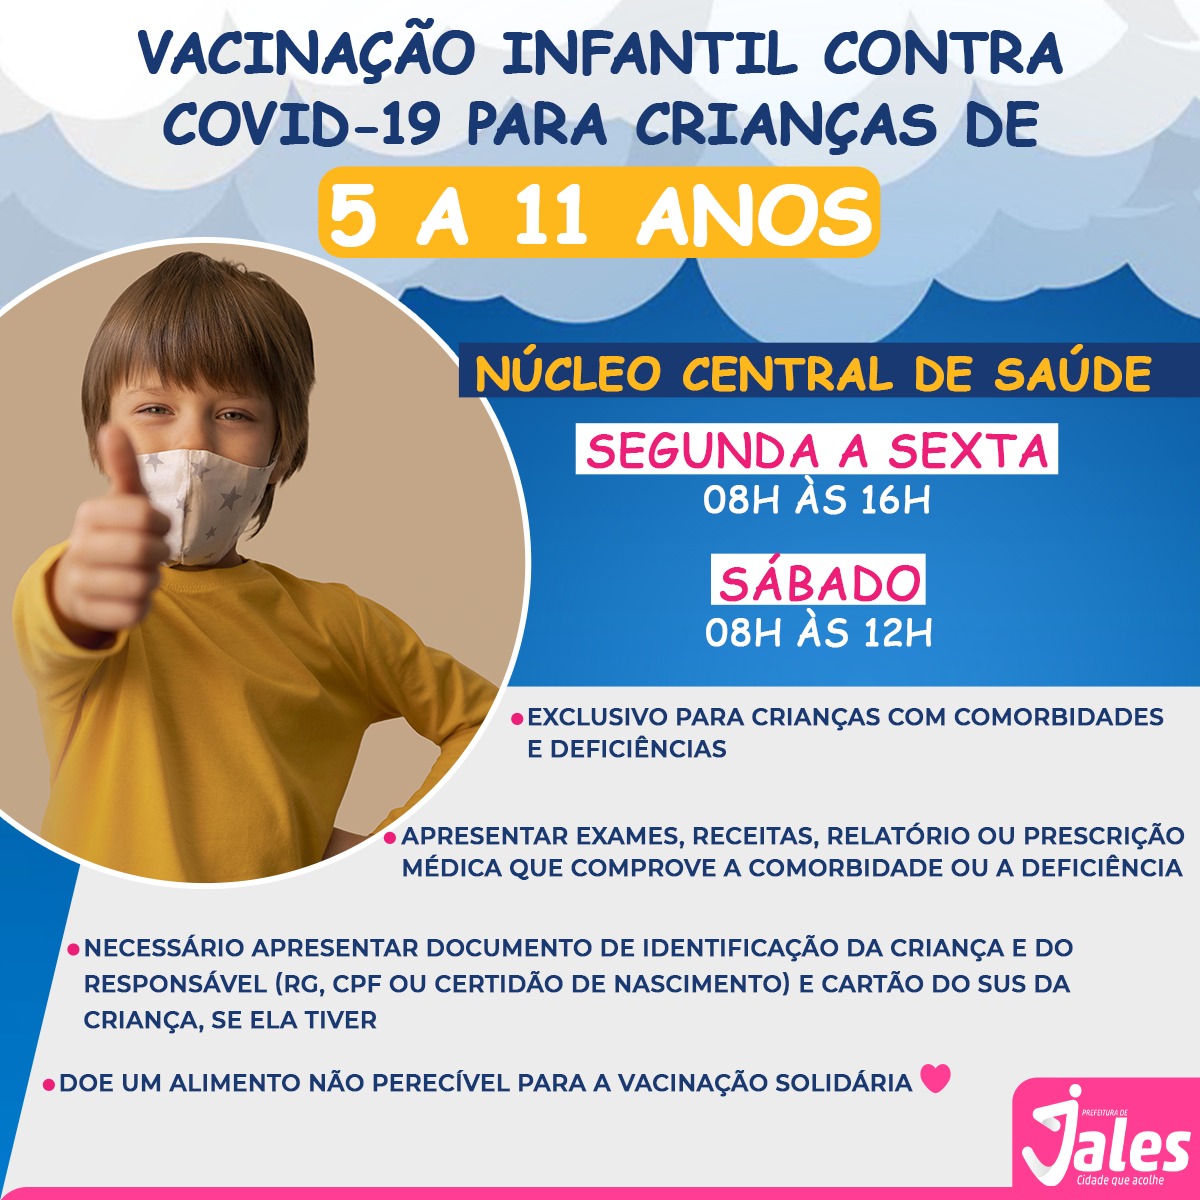 Imunização de crianças de 05 a 11 anos, com comorbidades, contra a covid-19 começará nesta terça-feira (18) em Jales